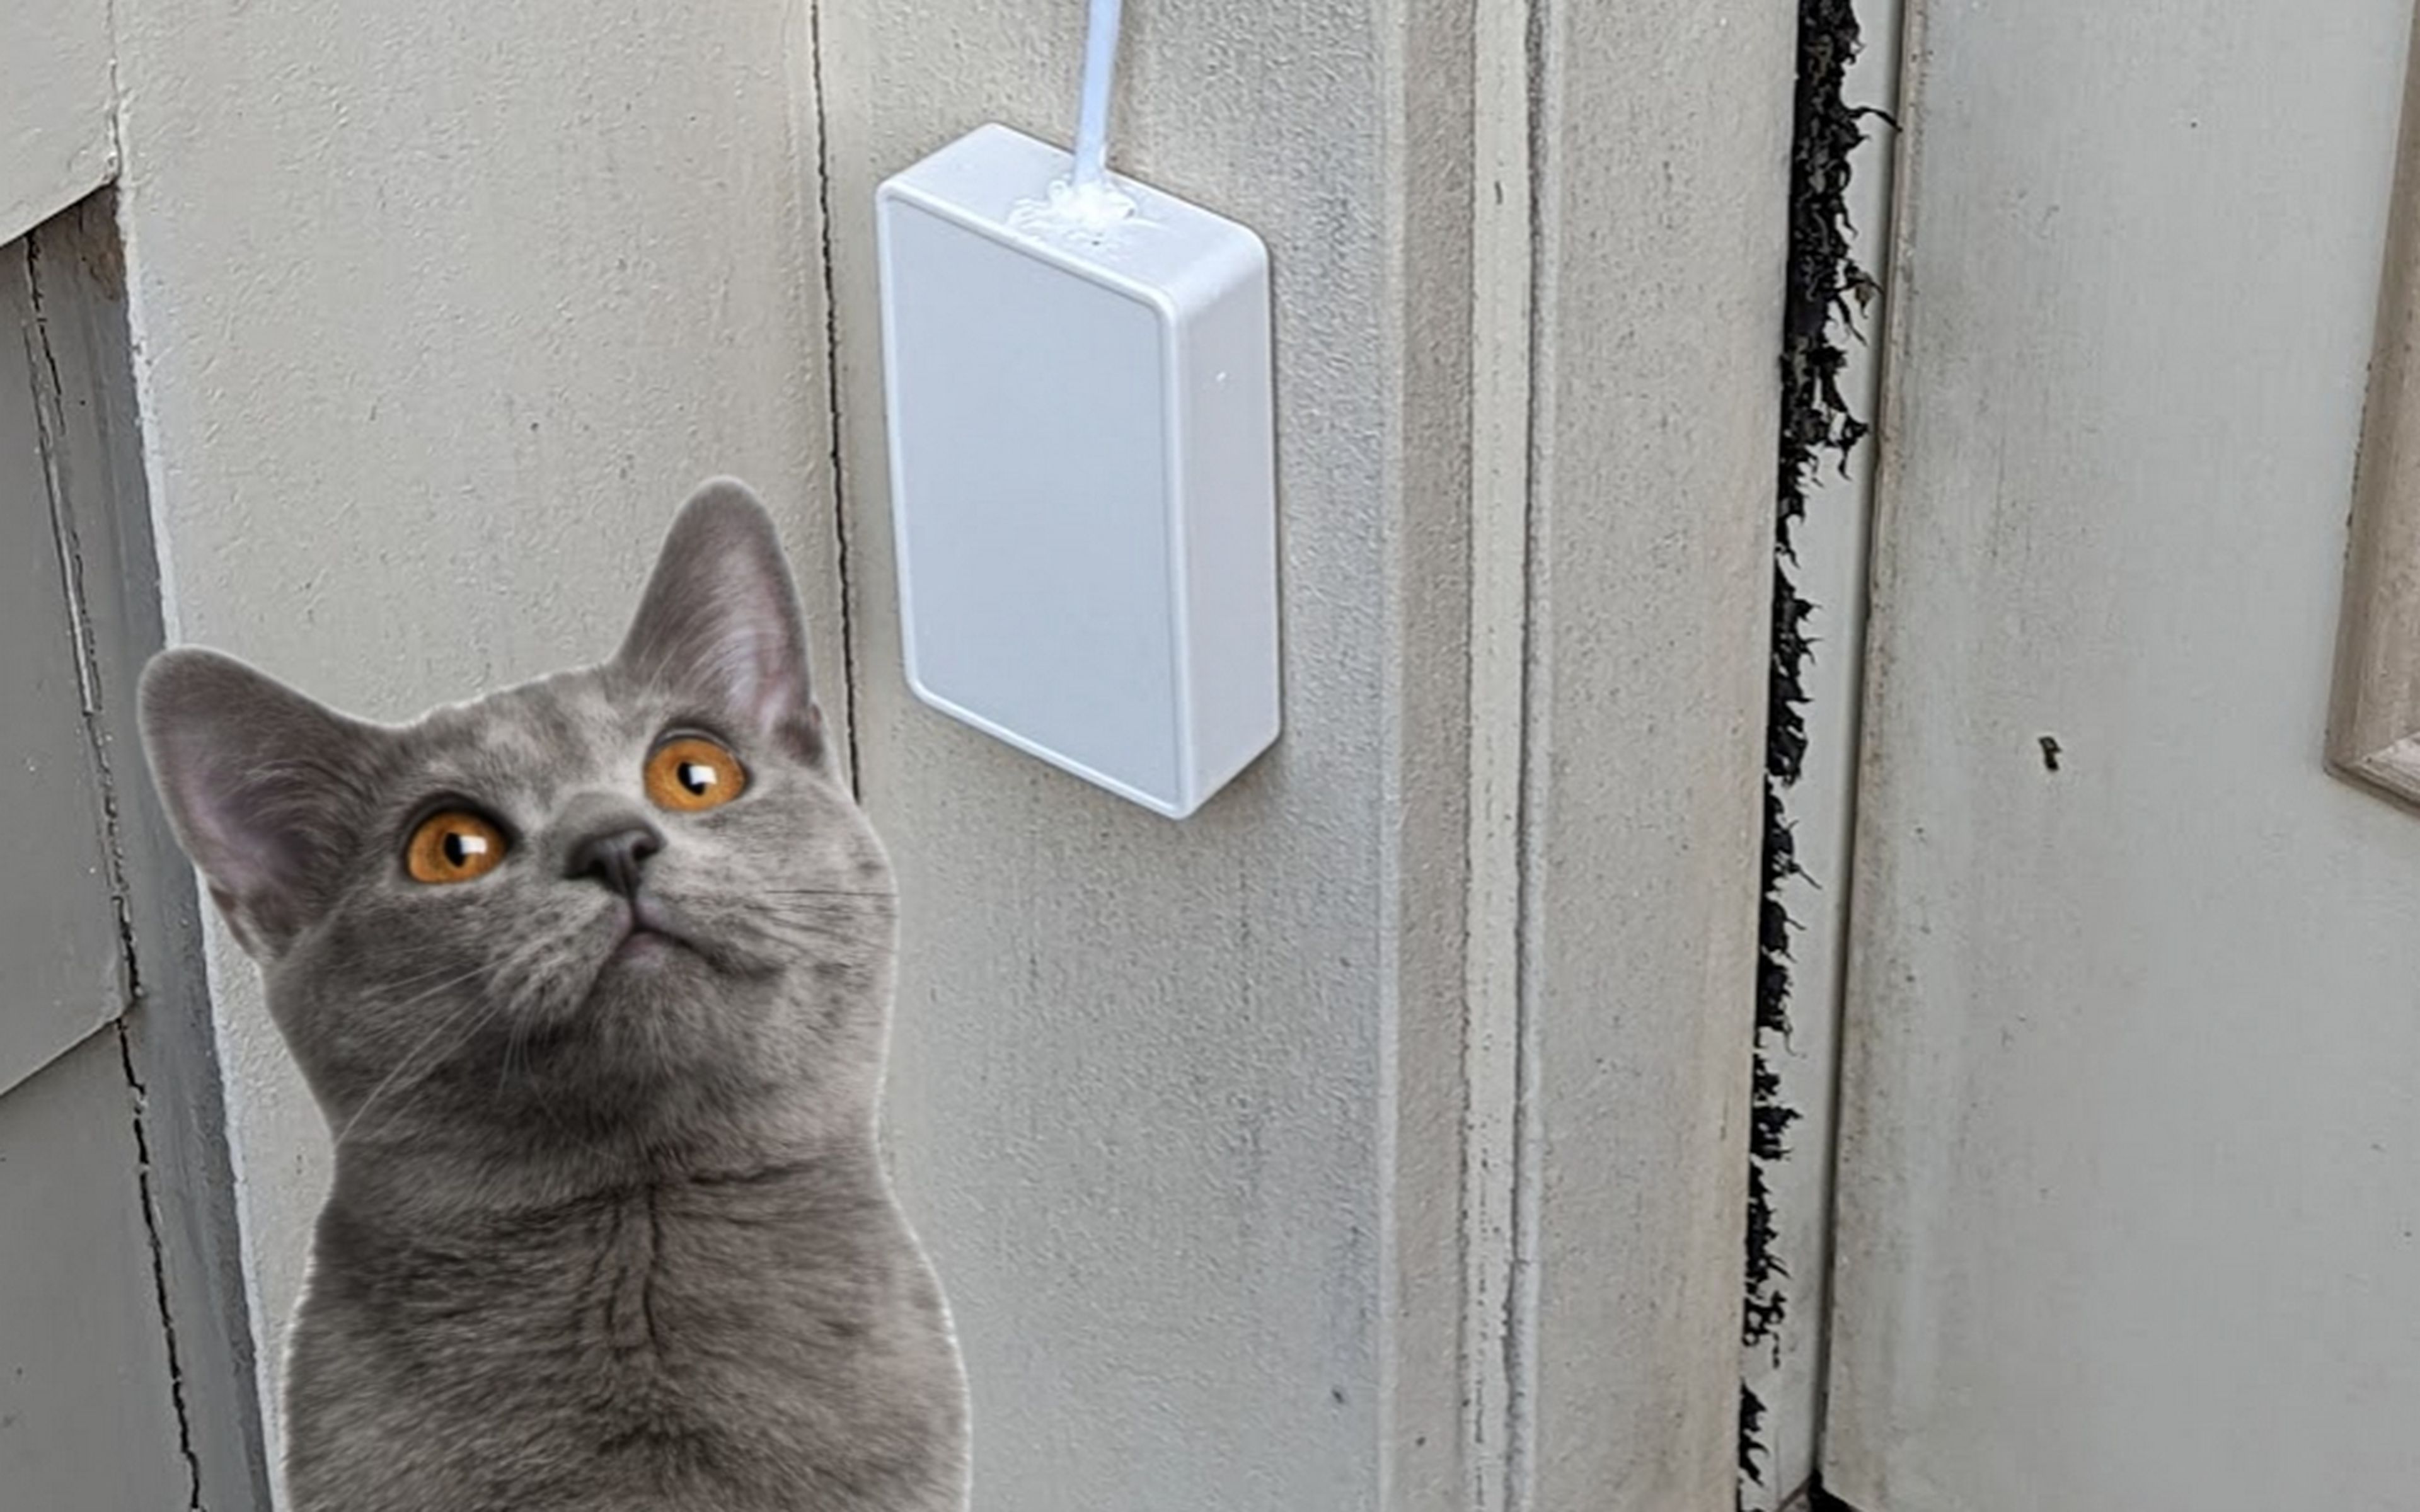 Inventan un timbre para gatos con una Raspberry Pi que solo abre la puerta  a los maullidos